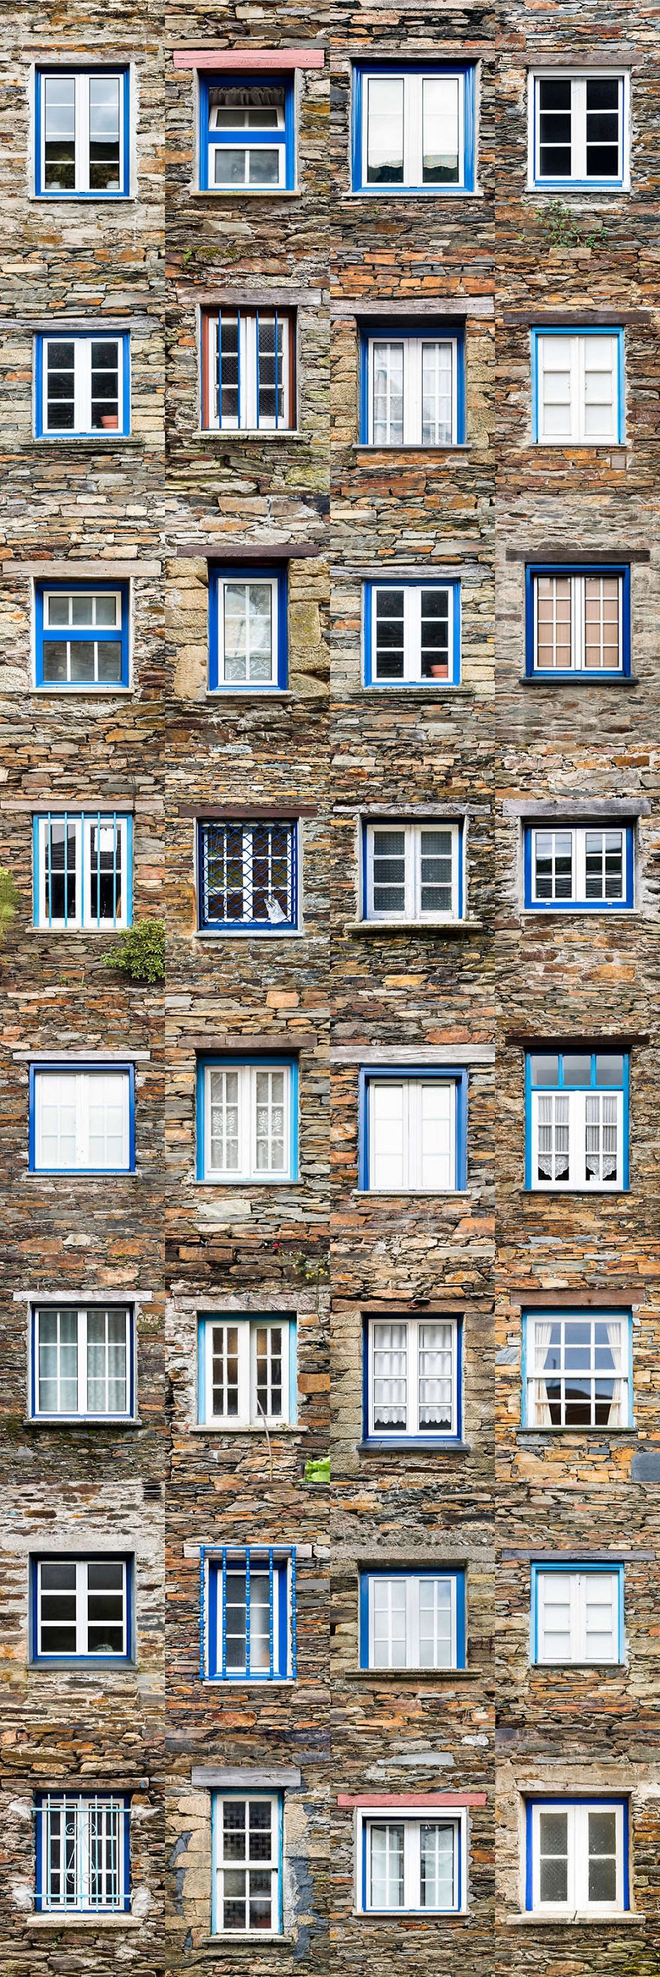 Mãn nhãn với 14 phong cách thiết kế cửa sổ khác nhau ở Bồ Đào Nha - Ảnh 19.